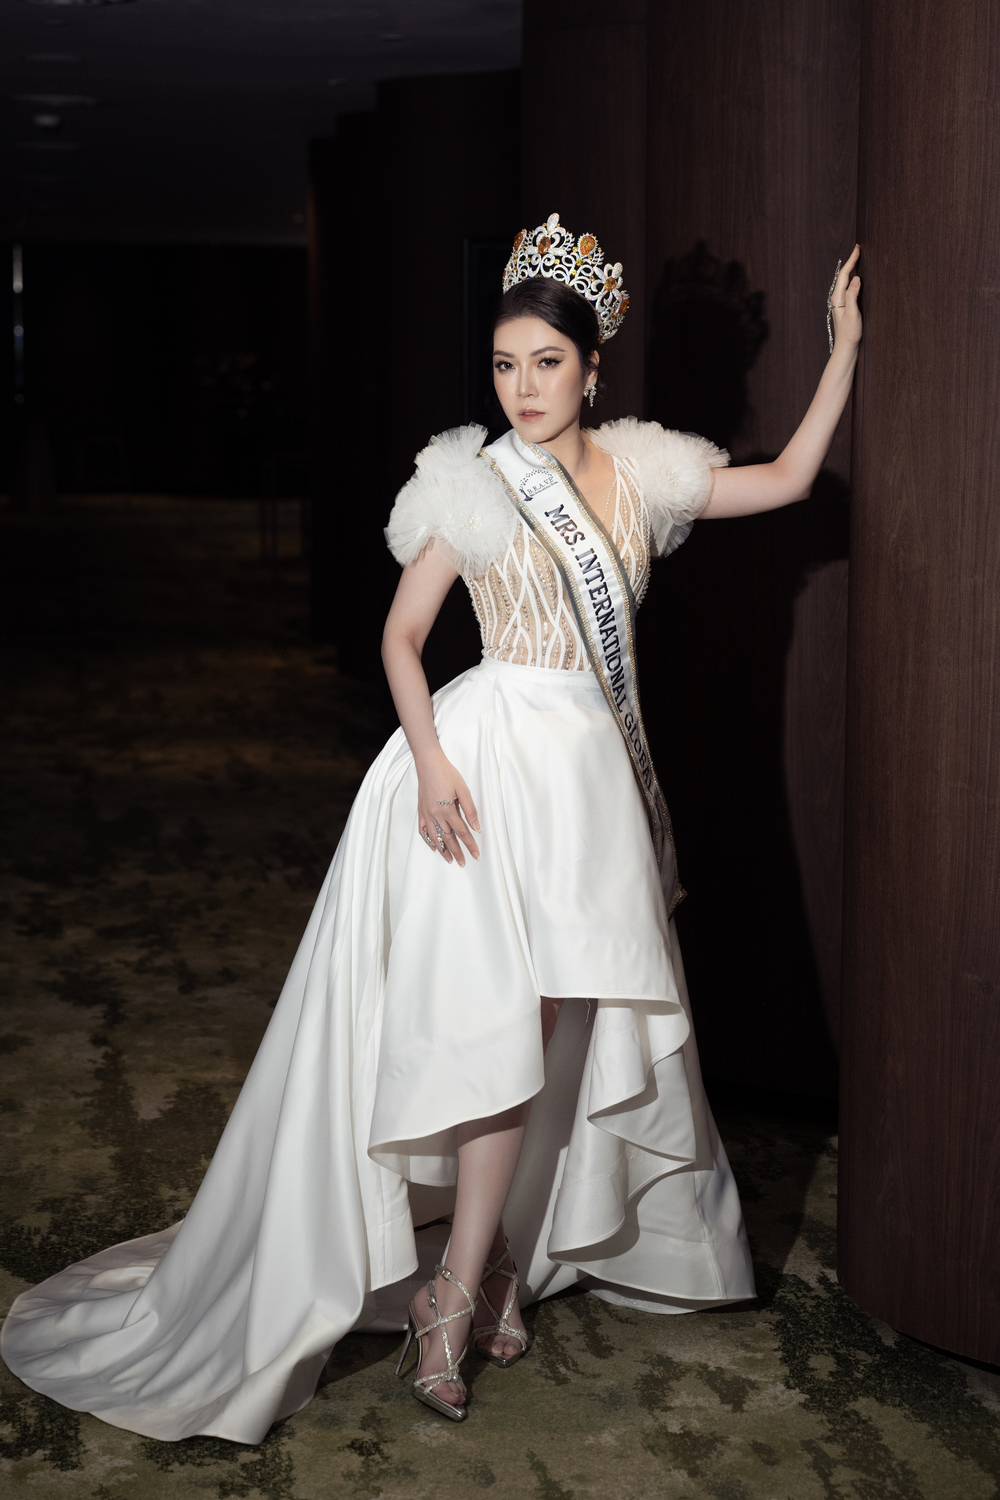 Hoa hậu Trần Hà Trâm Anh, CEO Vũ Thái “xuất khẩu” đầu năm sang Mã Lai để chấm thi - Ảnh 5.